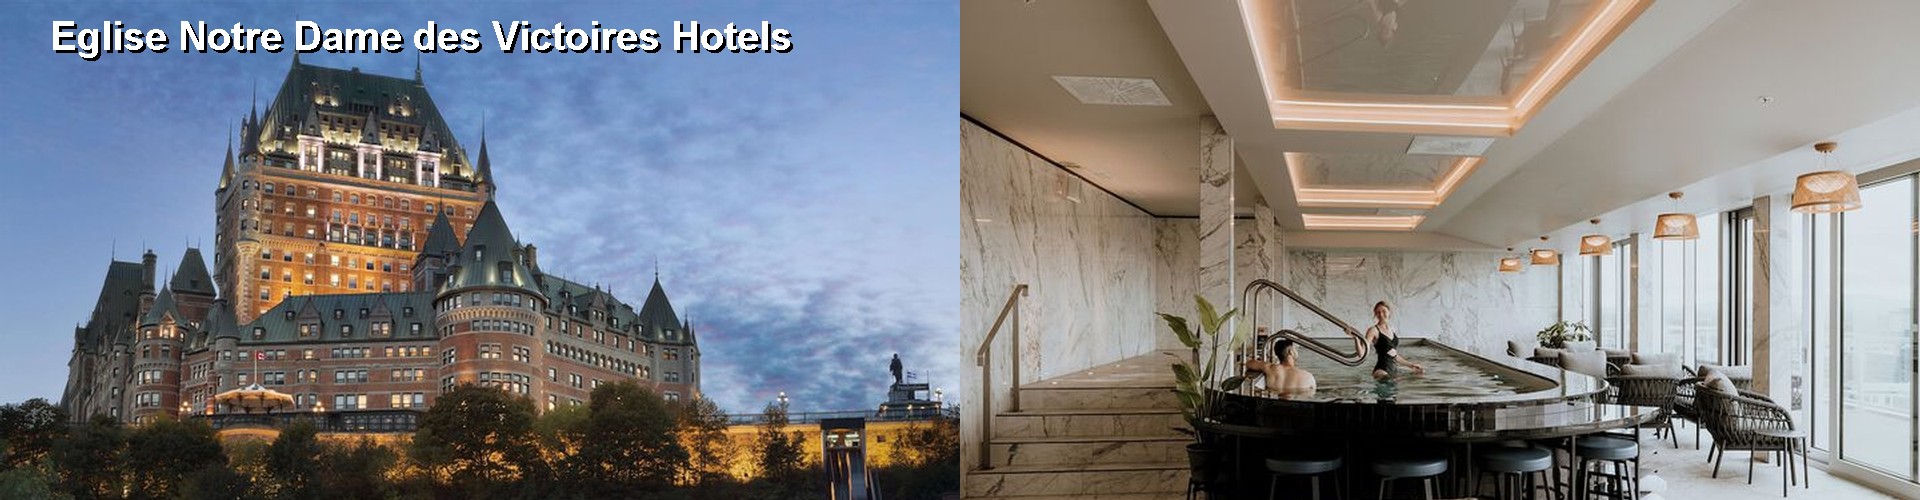 5 Best Hotels near Eglise Notre Dame des Victoires